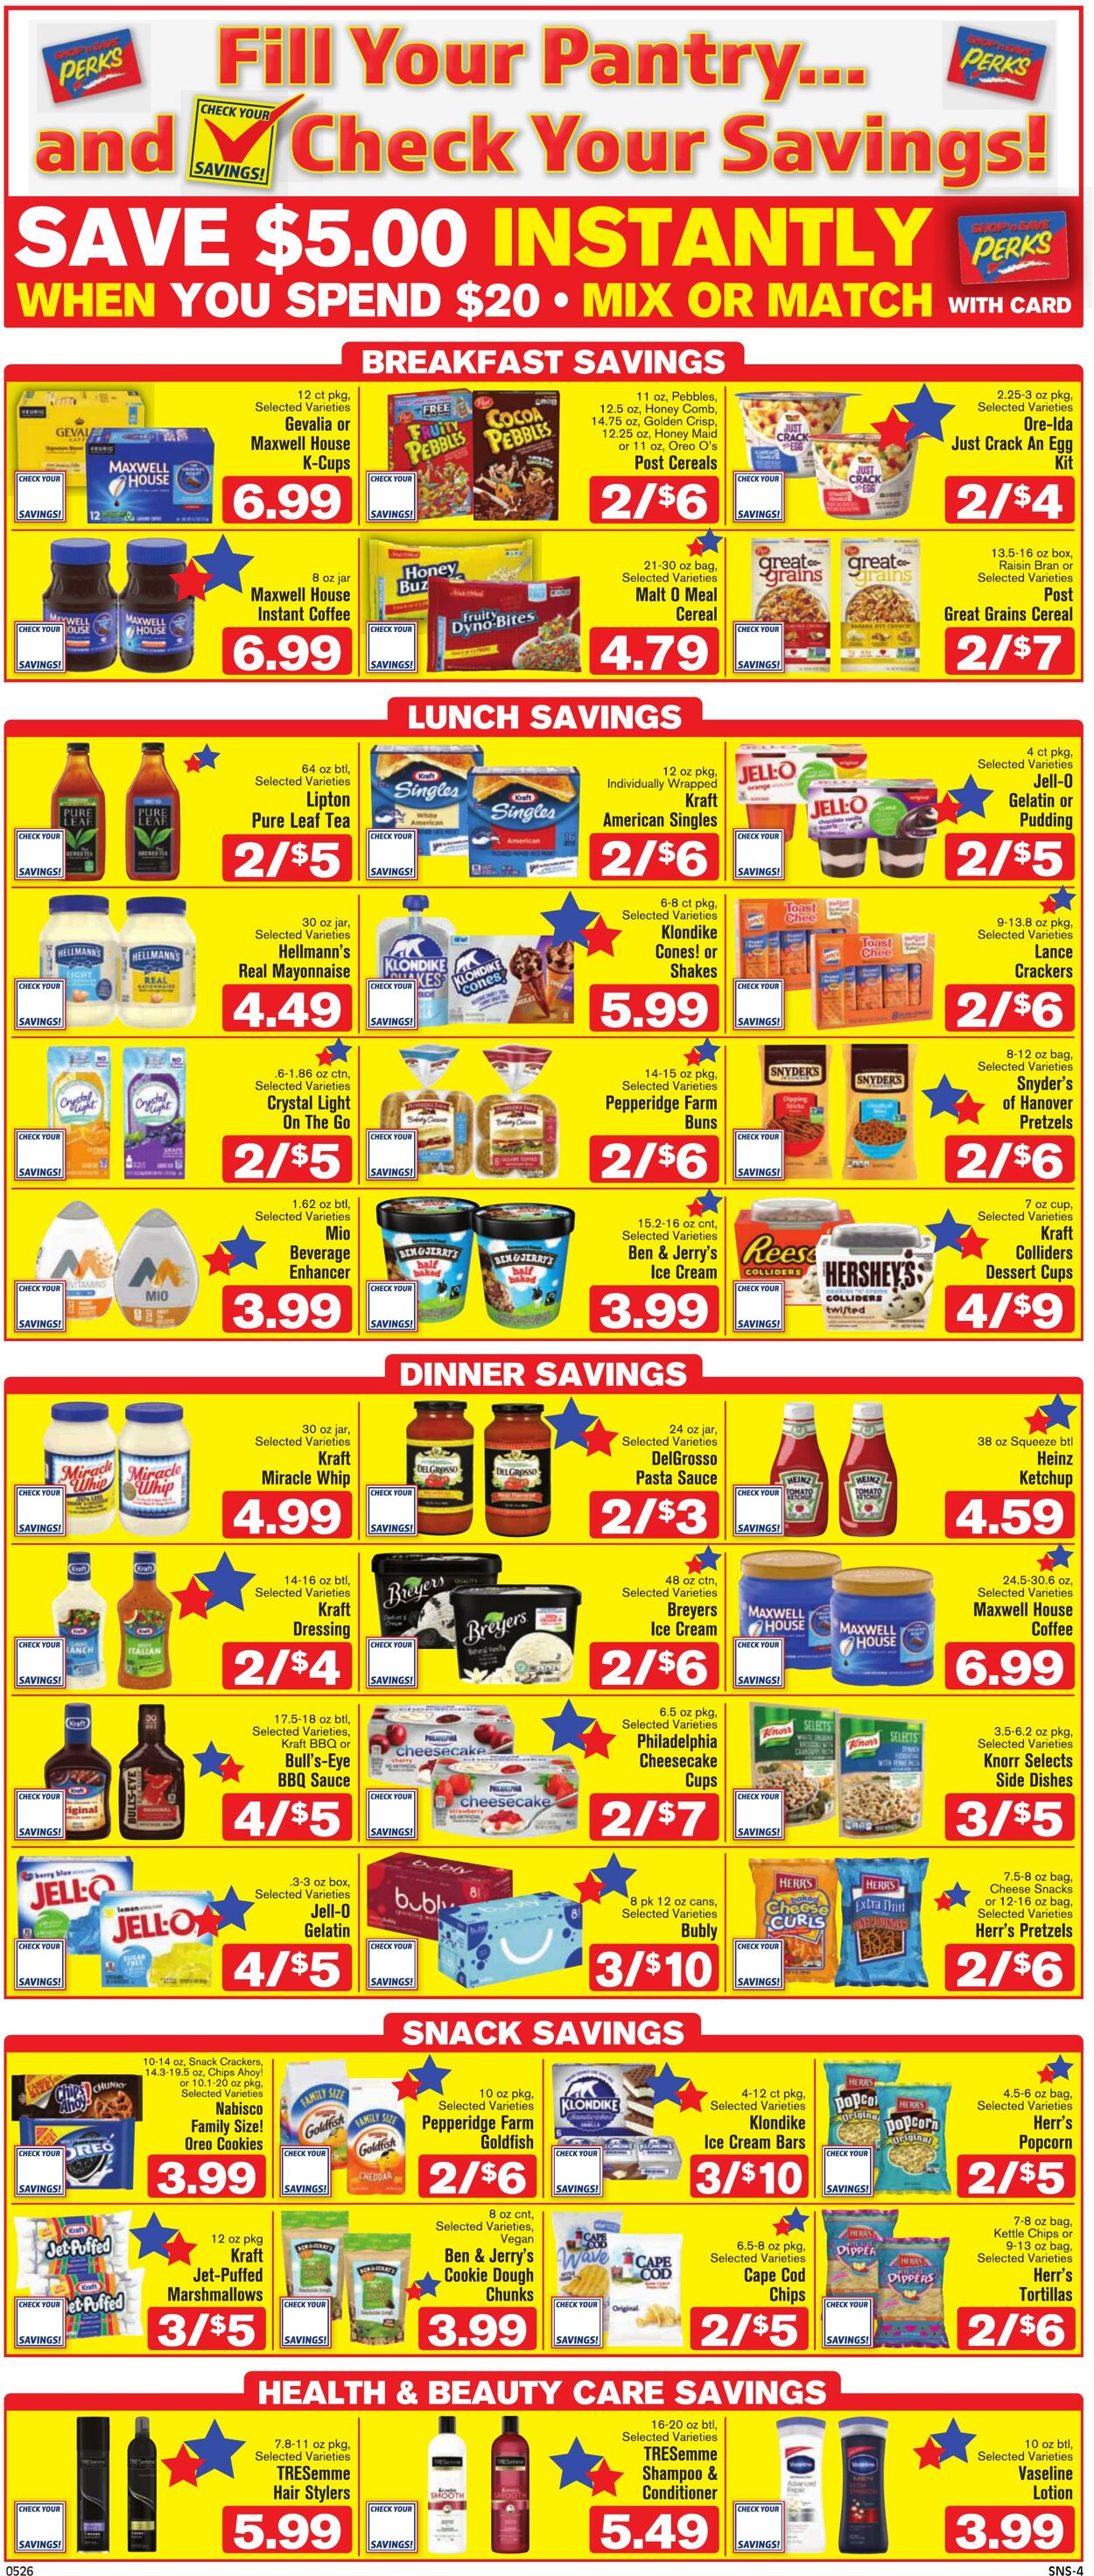 Weekly ad Shop'n Save 05/26/2022 - 06/01/2022